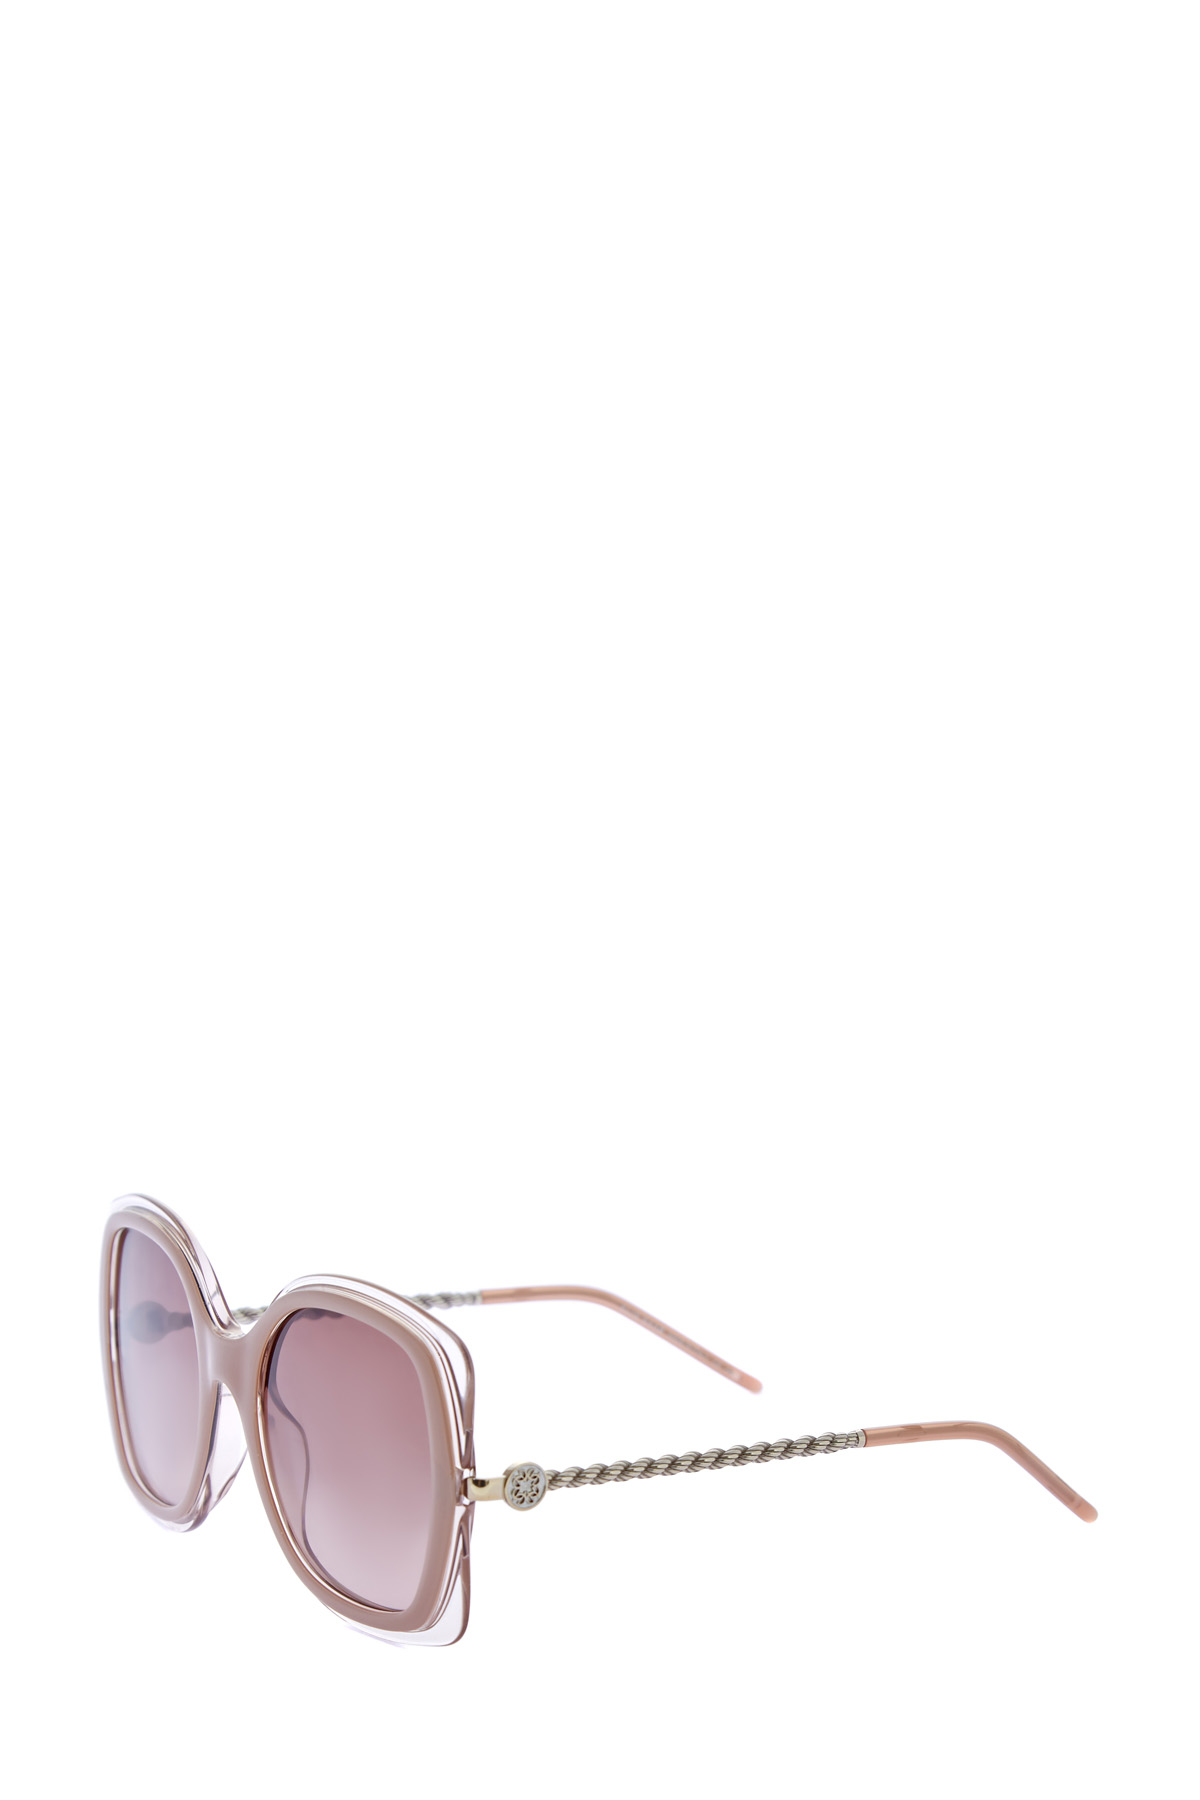 Солнцезащитные очки с полупрозрачными контурами и витыми дужками ELIE SAAB, размер 40 - фото 3